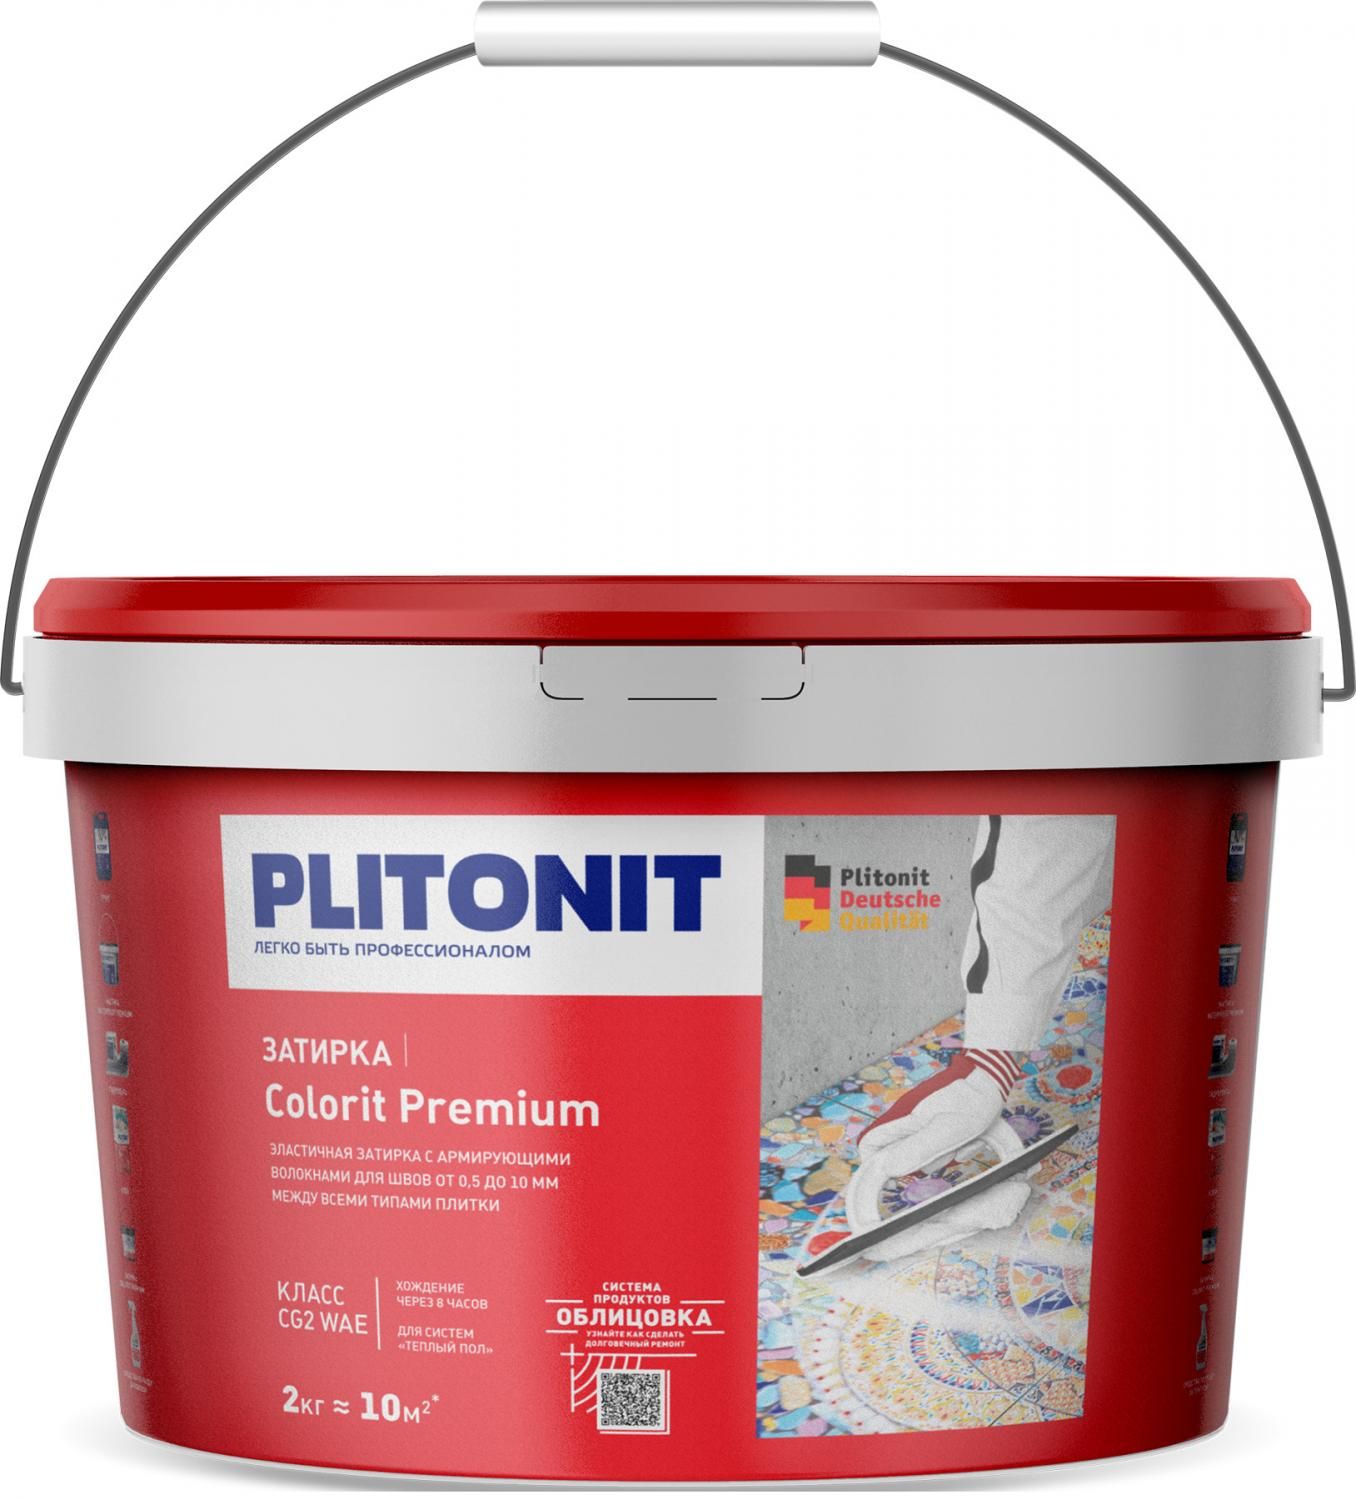 Купить Затирка Plitonit Colorit Premium коричневая 2 кг цементная